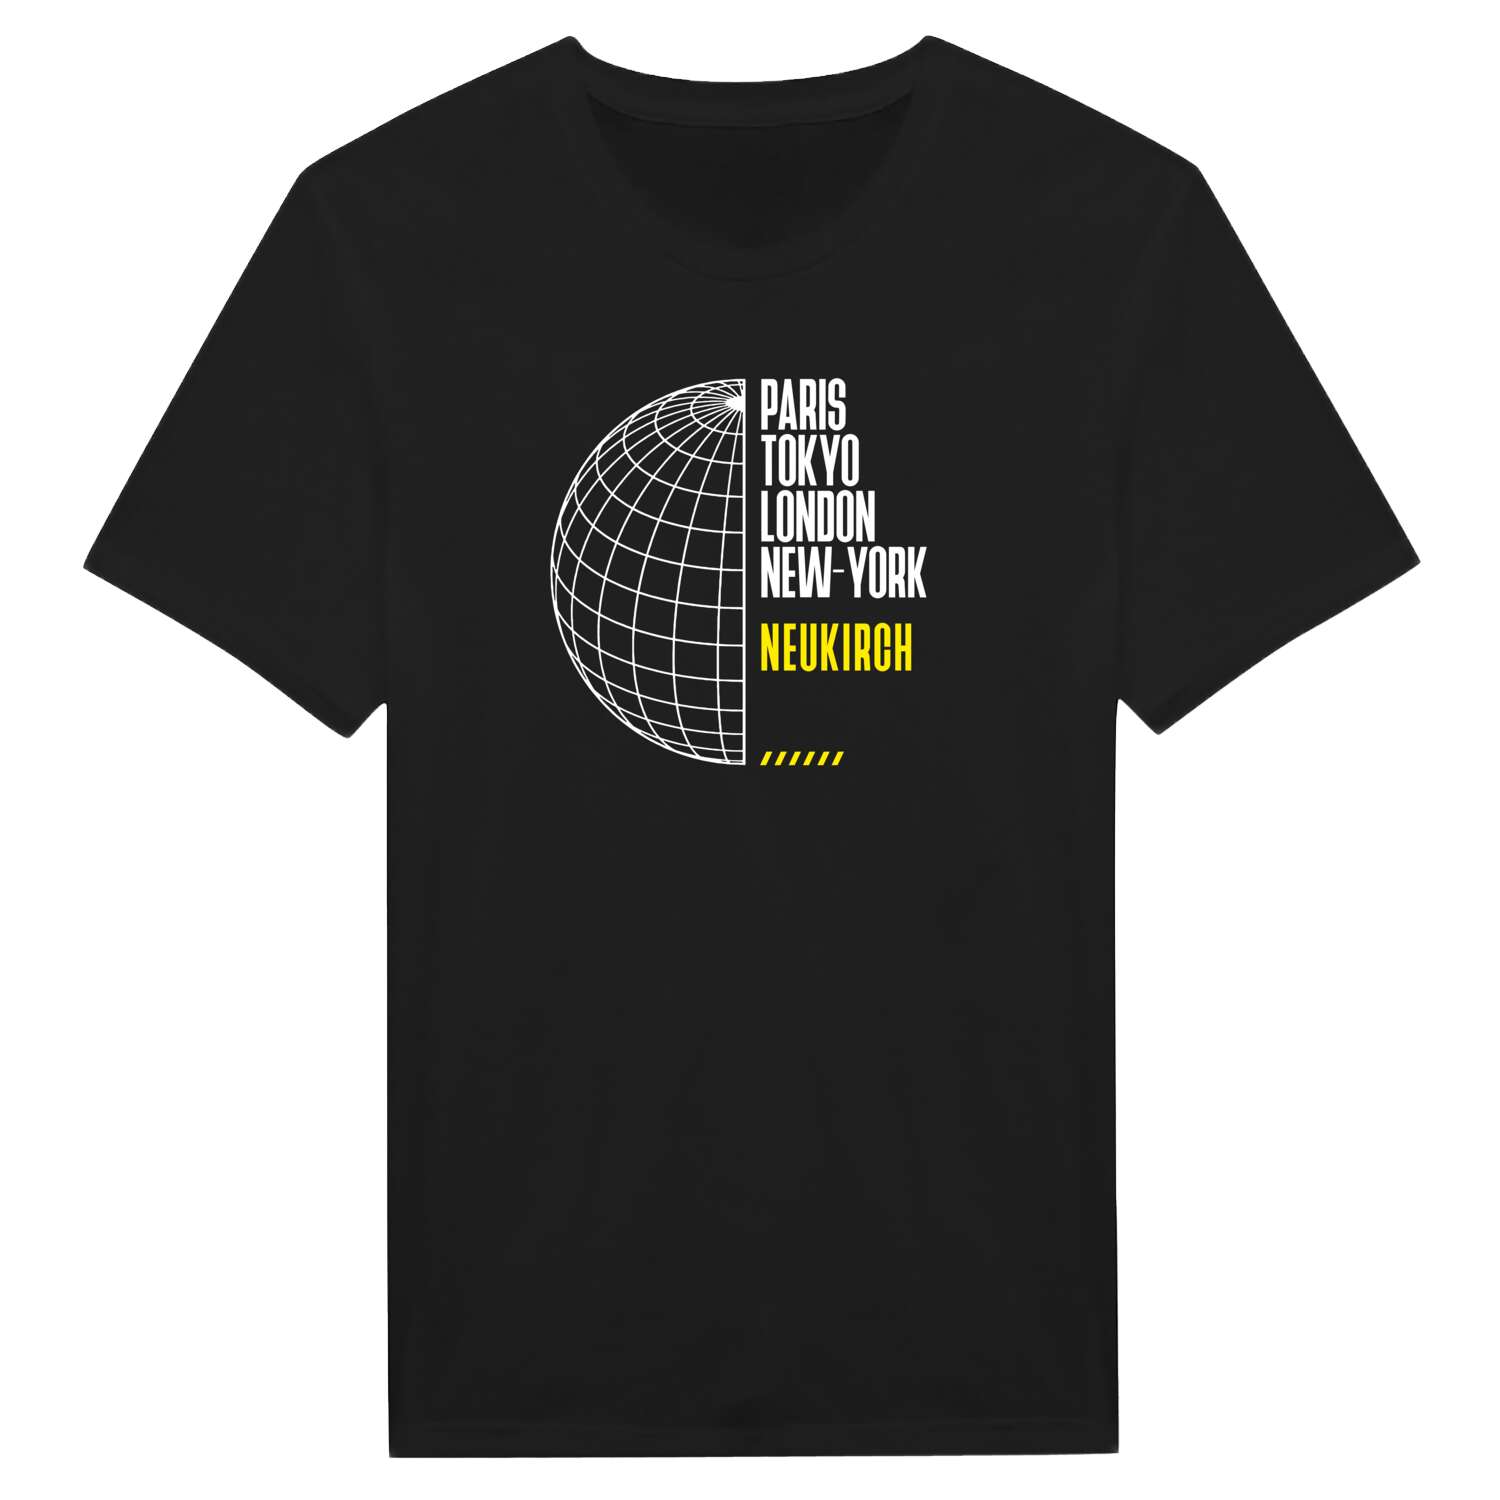 Neukirch T-Shirt »Paris Tokyo London«